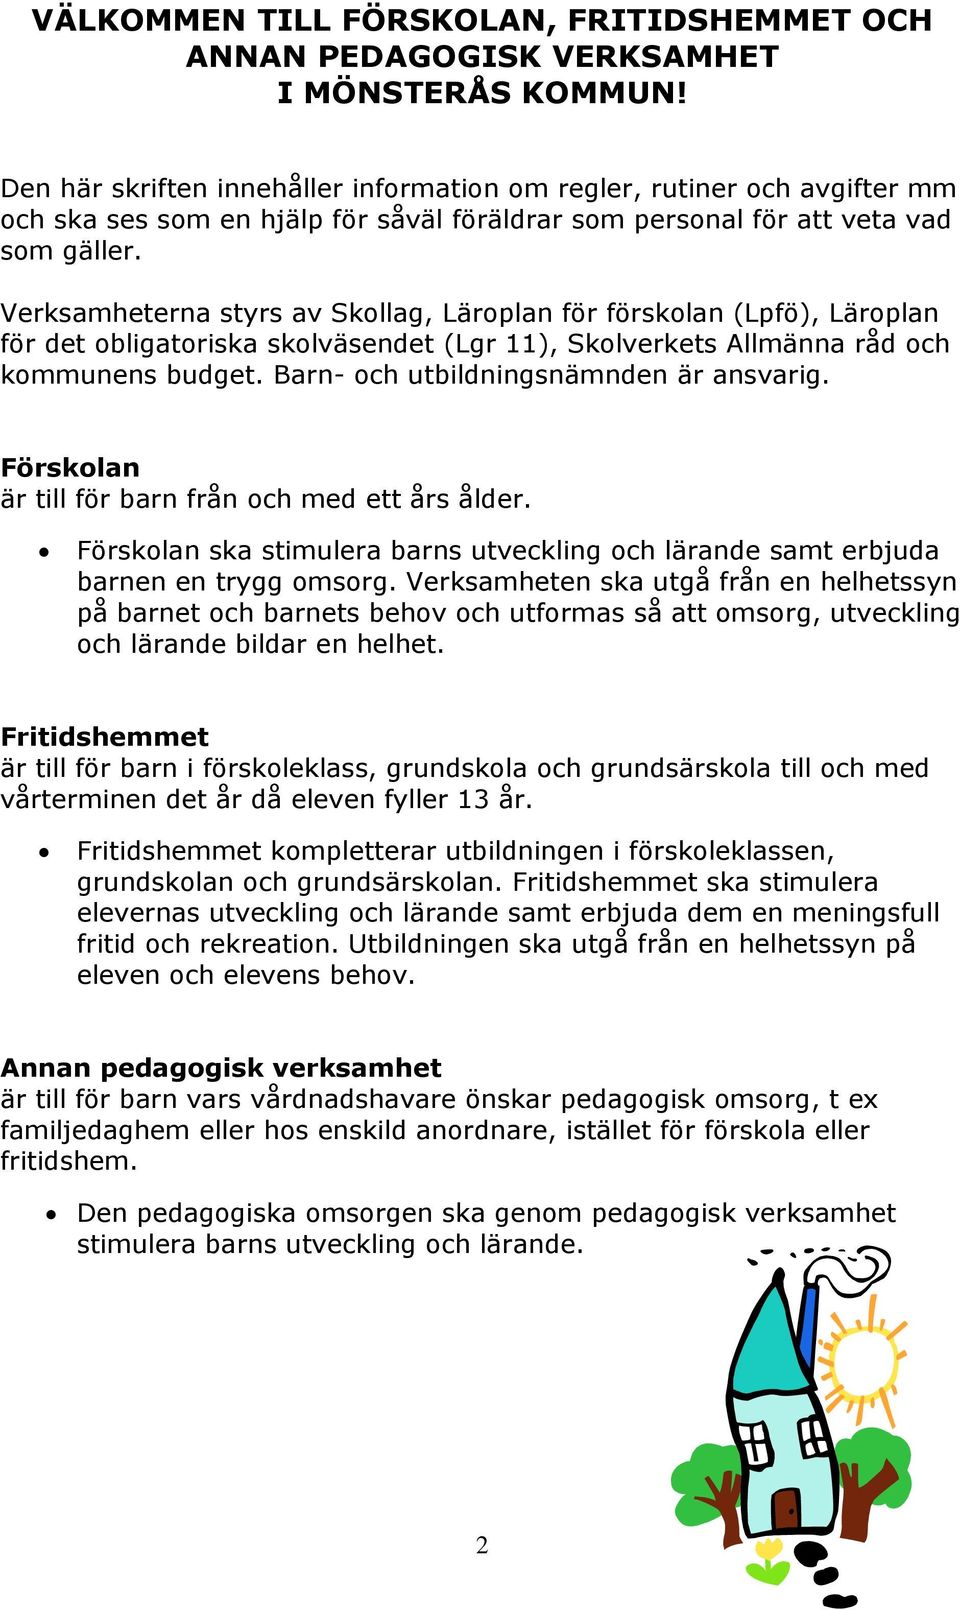 Verksamheterna styrs av Skollag, Läroplan för förskolan (Lpfö), Läroplan för det obligatoriska skolväsendet (Lgr 11), Skolverkets Allmänna råd och kommunens budget.